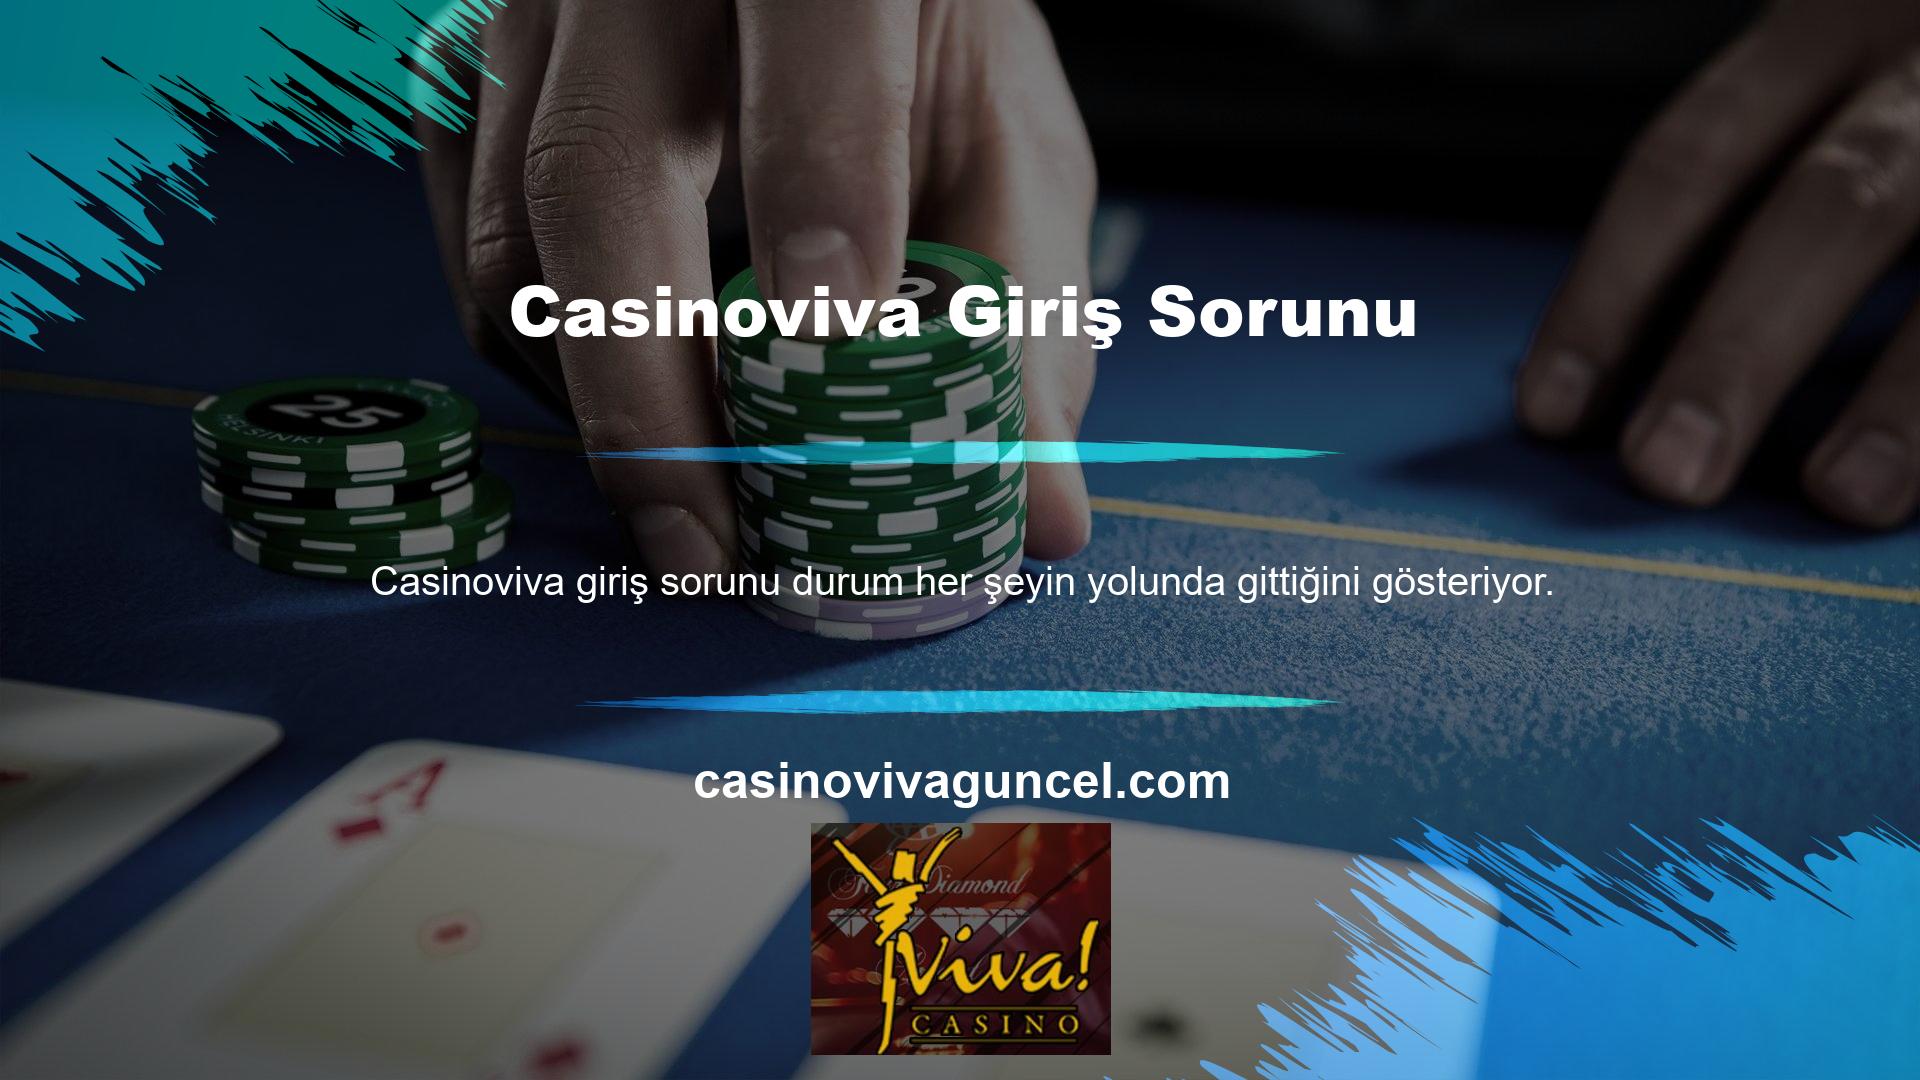 Casinoviva web sitesi, operatörlerin spor, oyun, sanal spor ve bingo üzerine bahis oynamak için kullanabileceği çevrimiçi bahis platformlarından biridir